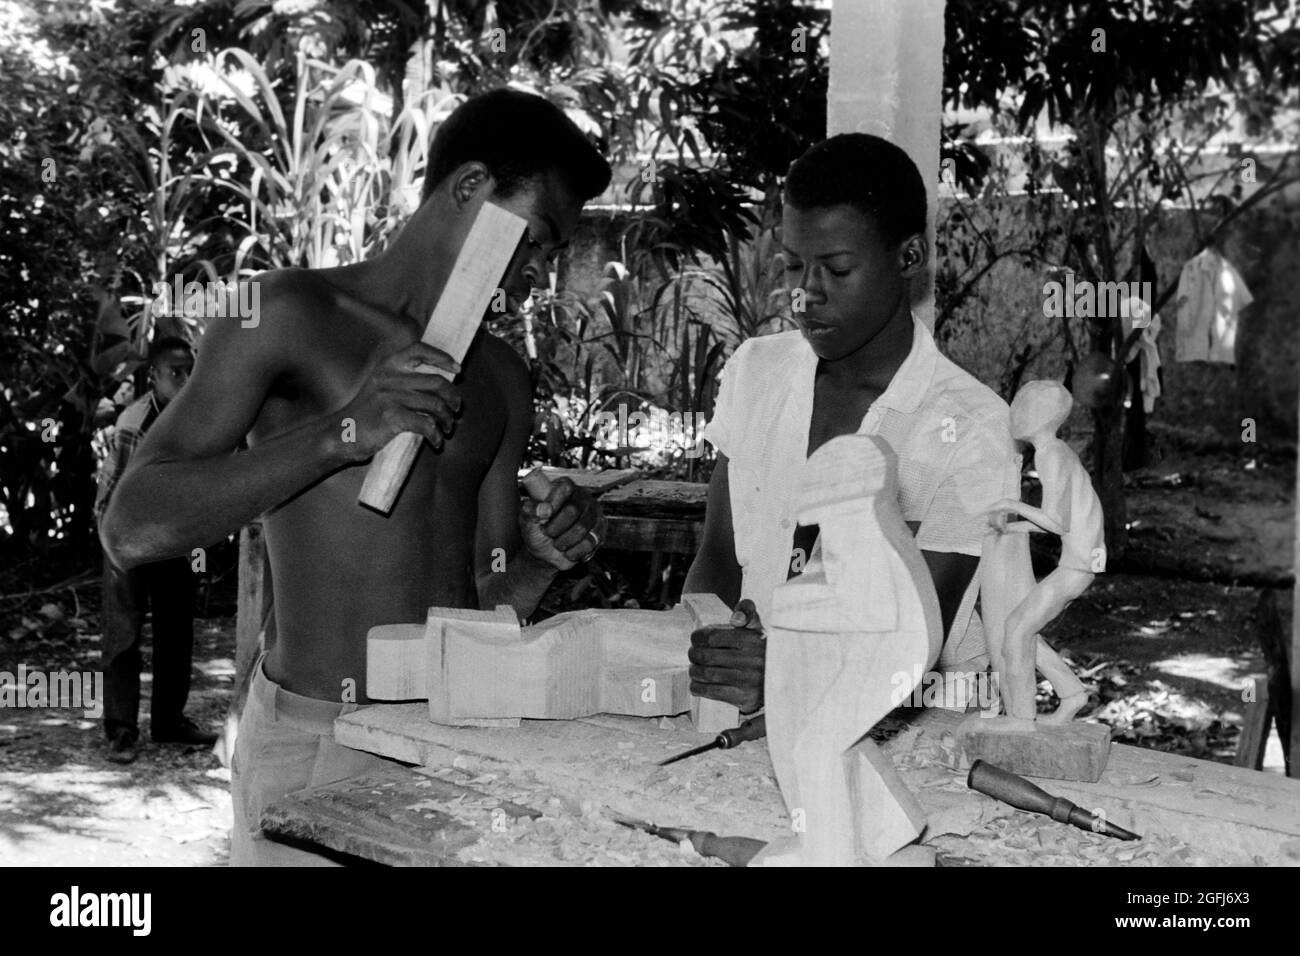 Kunsthandwerker schnitzen typische Skulpturen in Port-au-Prince, Haiti, 1966. Artisans carving typical wooden sculptures in Port-au-Prince, Haiti, 1966. Stock Photo